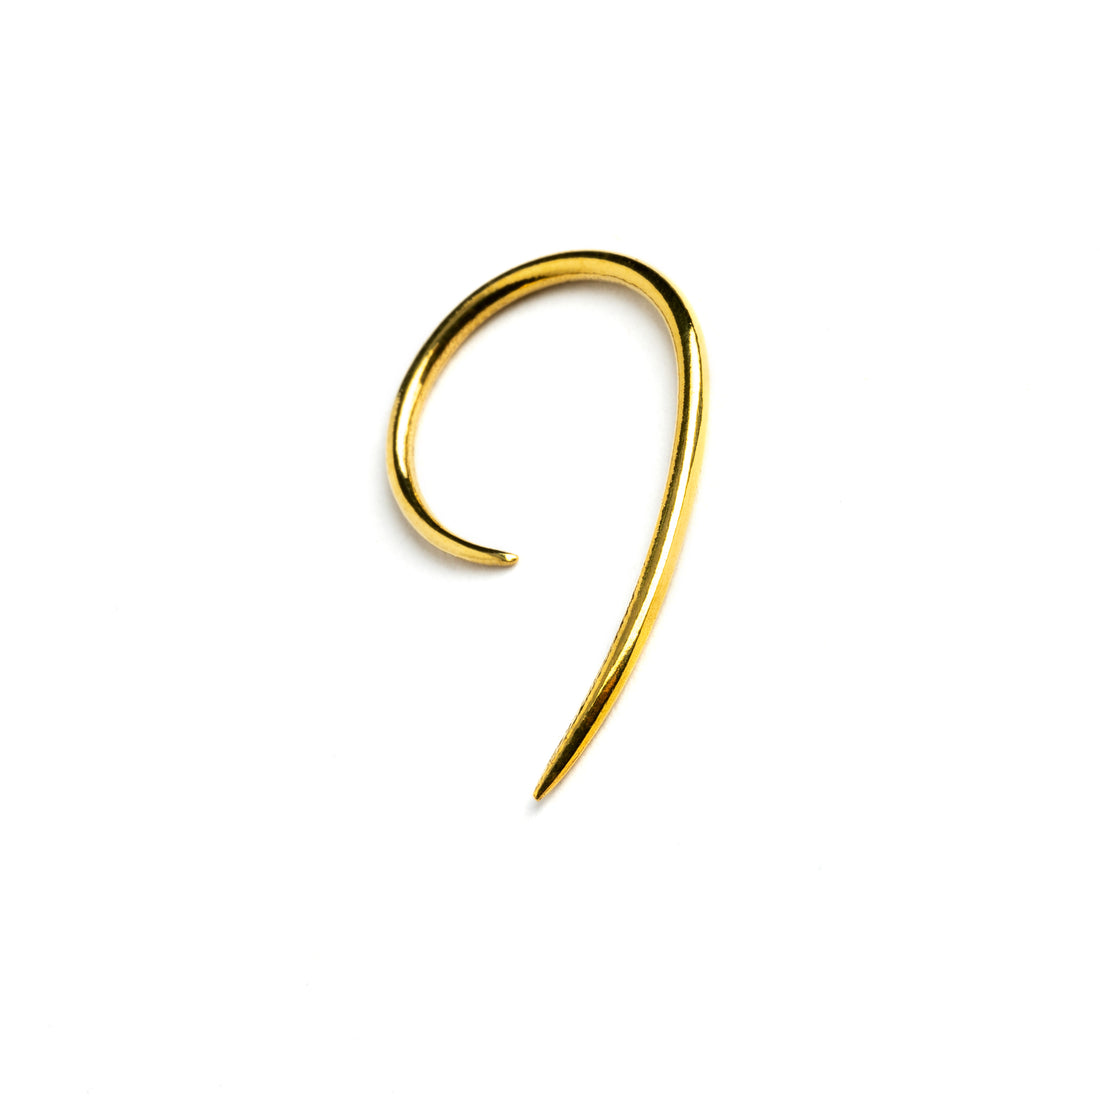 single golden brass wire hook earring left side view